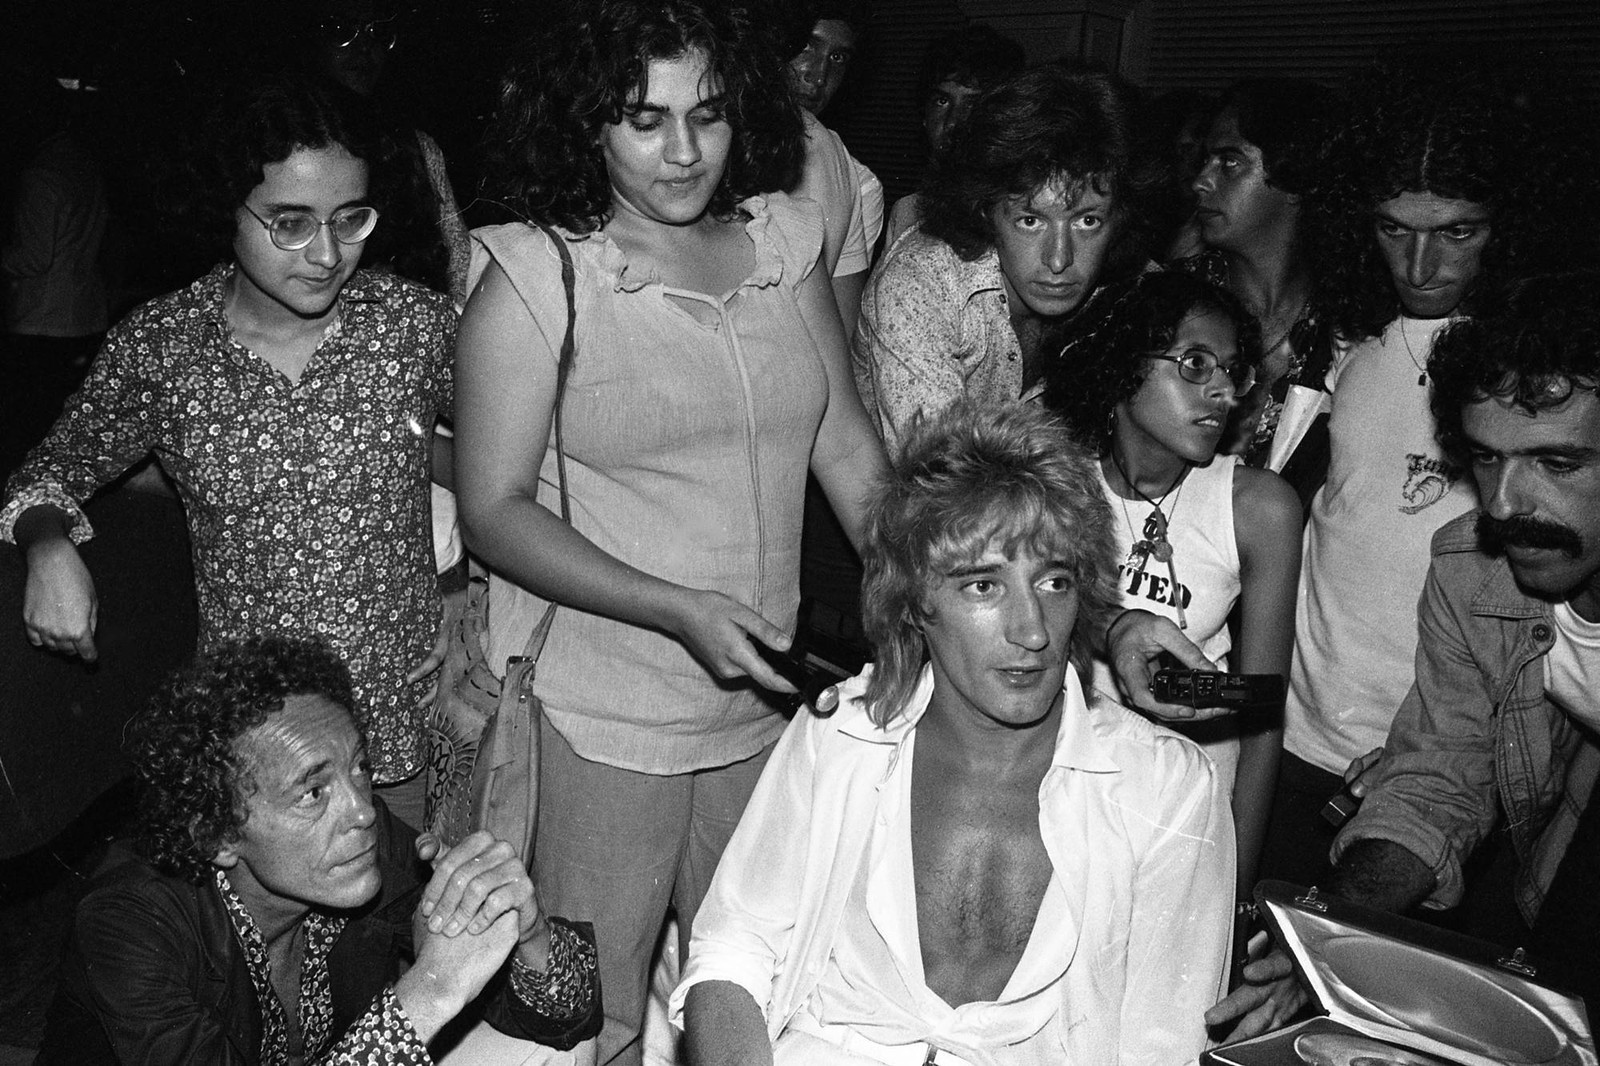 Coletiva de imprensa do cantor Rod Stewart no Copacabana Palace em 1978 — Foto: Alcyr Cavalcanti / Agência O Globo